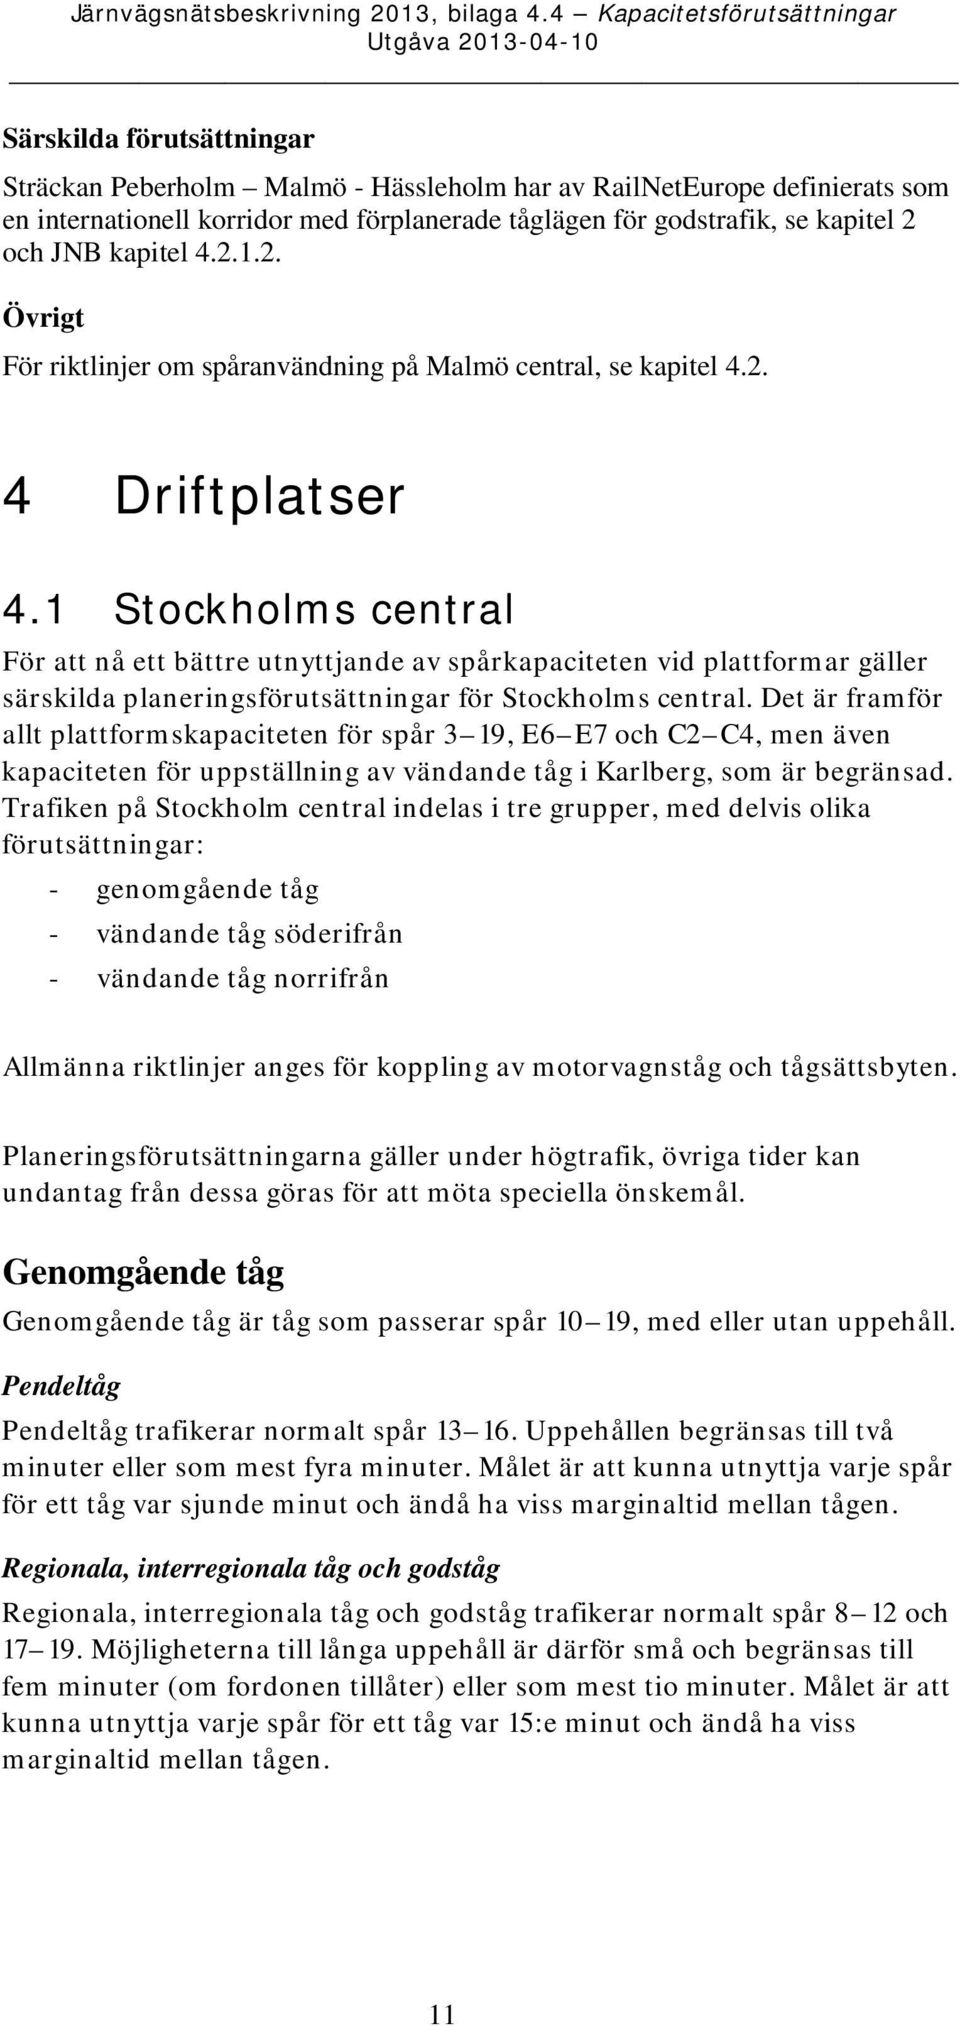 1 Stockholms central För att nå ett bättre utnyttjande av spårkapaciteten vid plattformar gäller särskilda planeringsförutsättningar för Stockholms central.